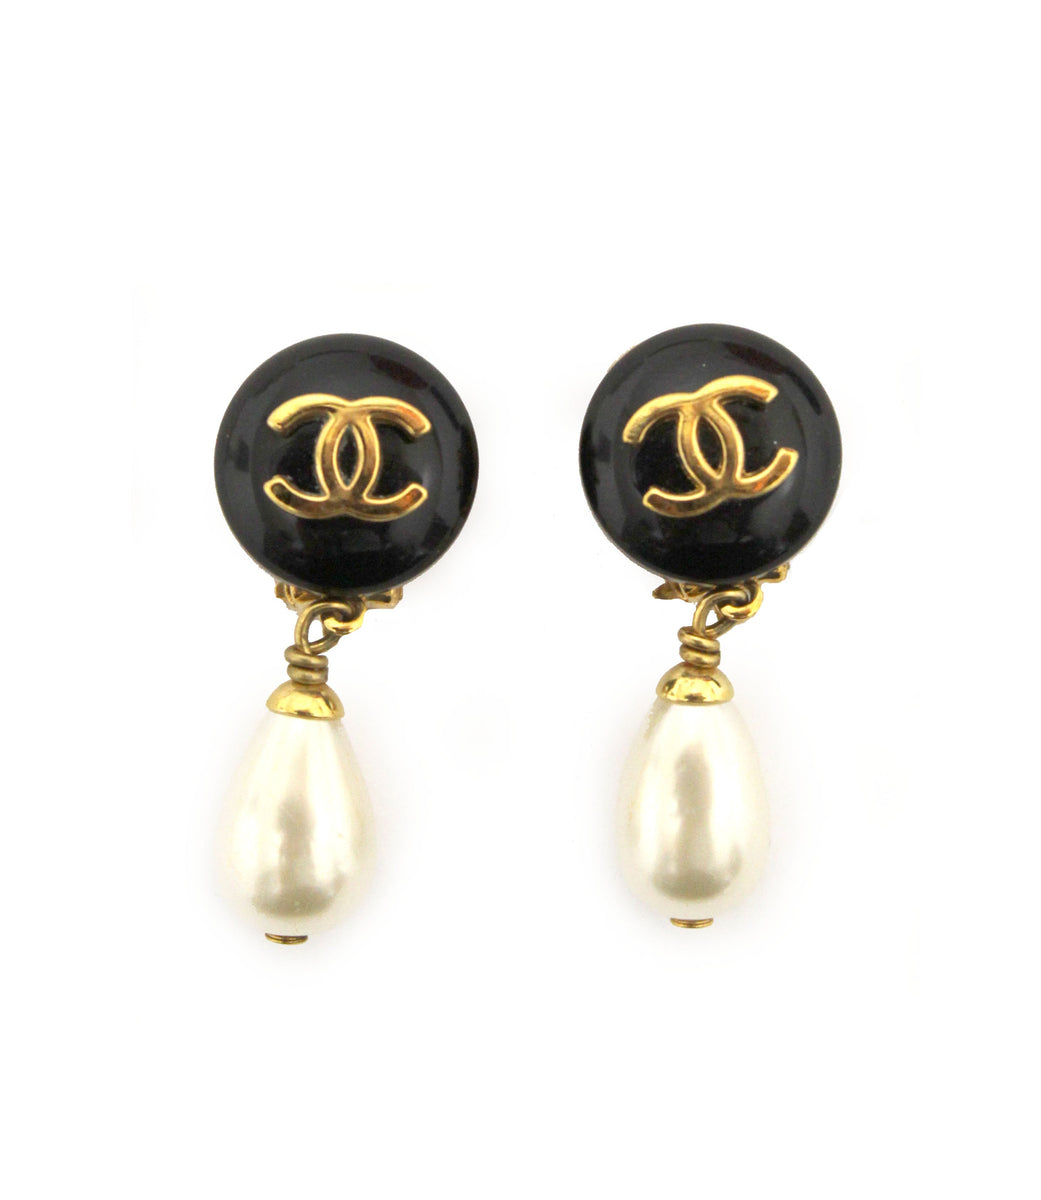 chanel stud pearl earrings